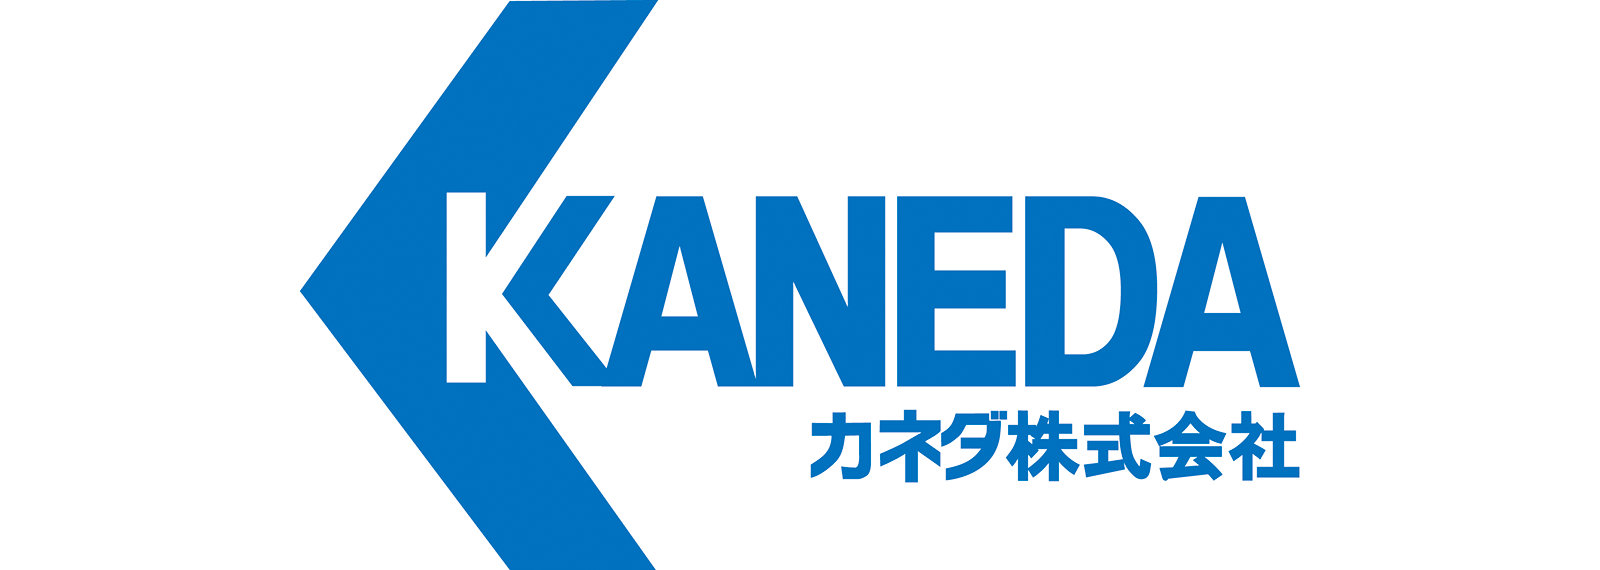 カネダ株式会社